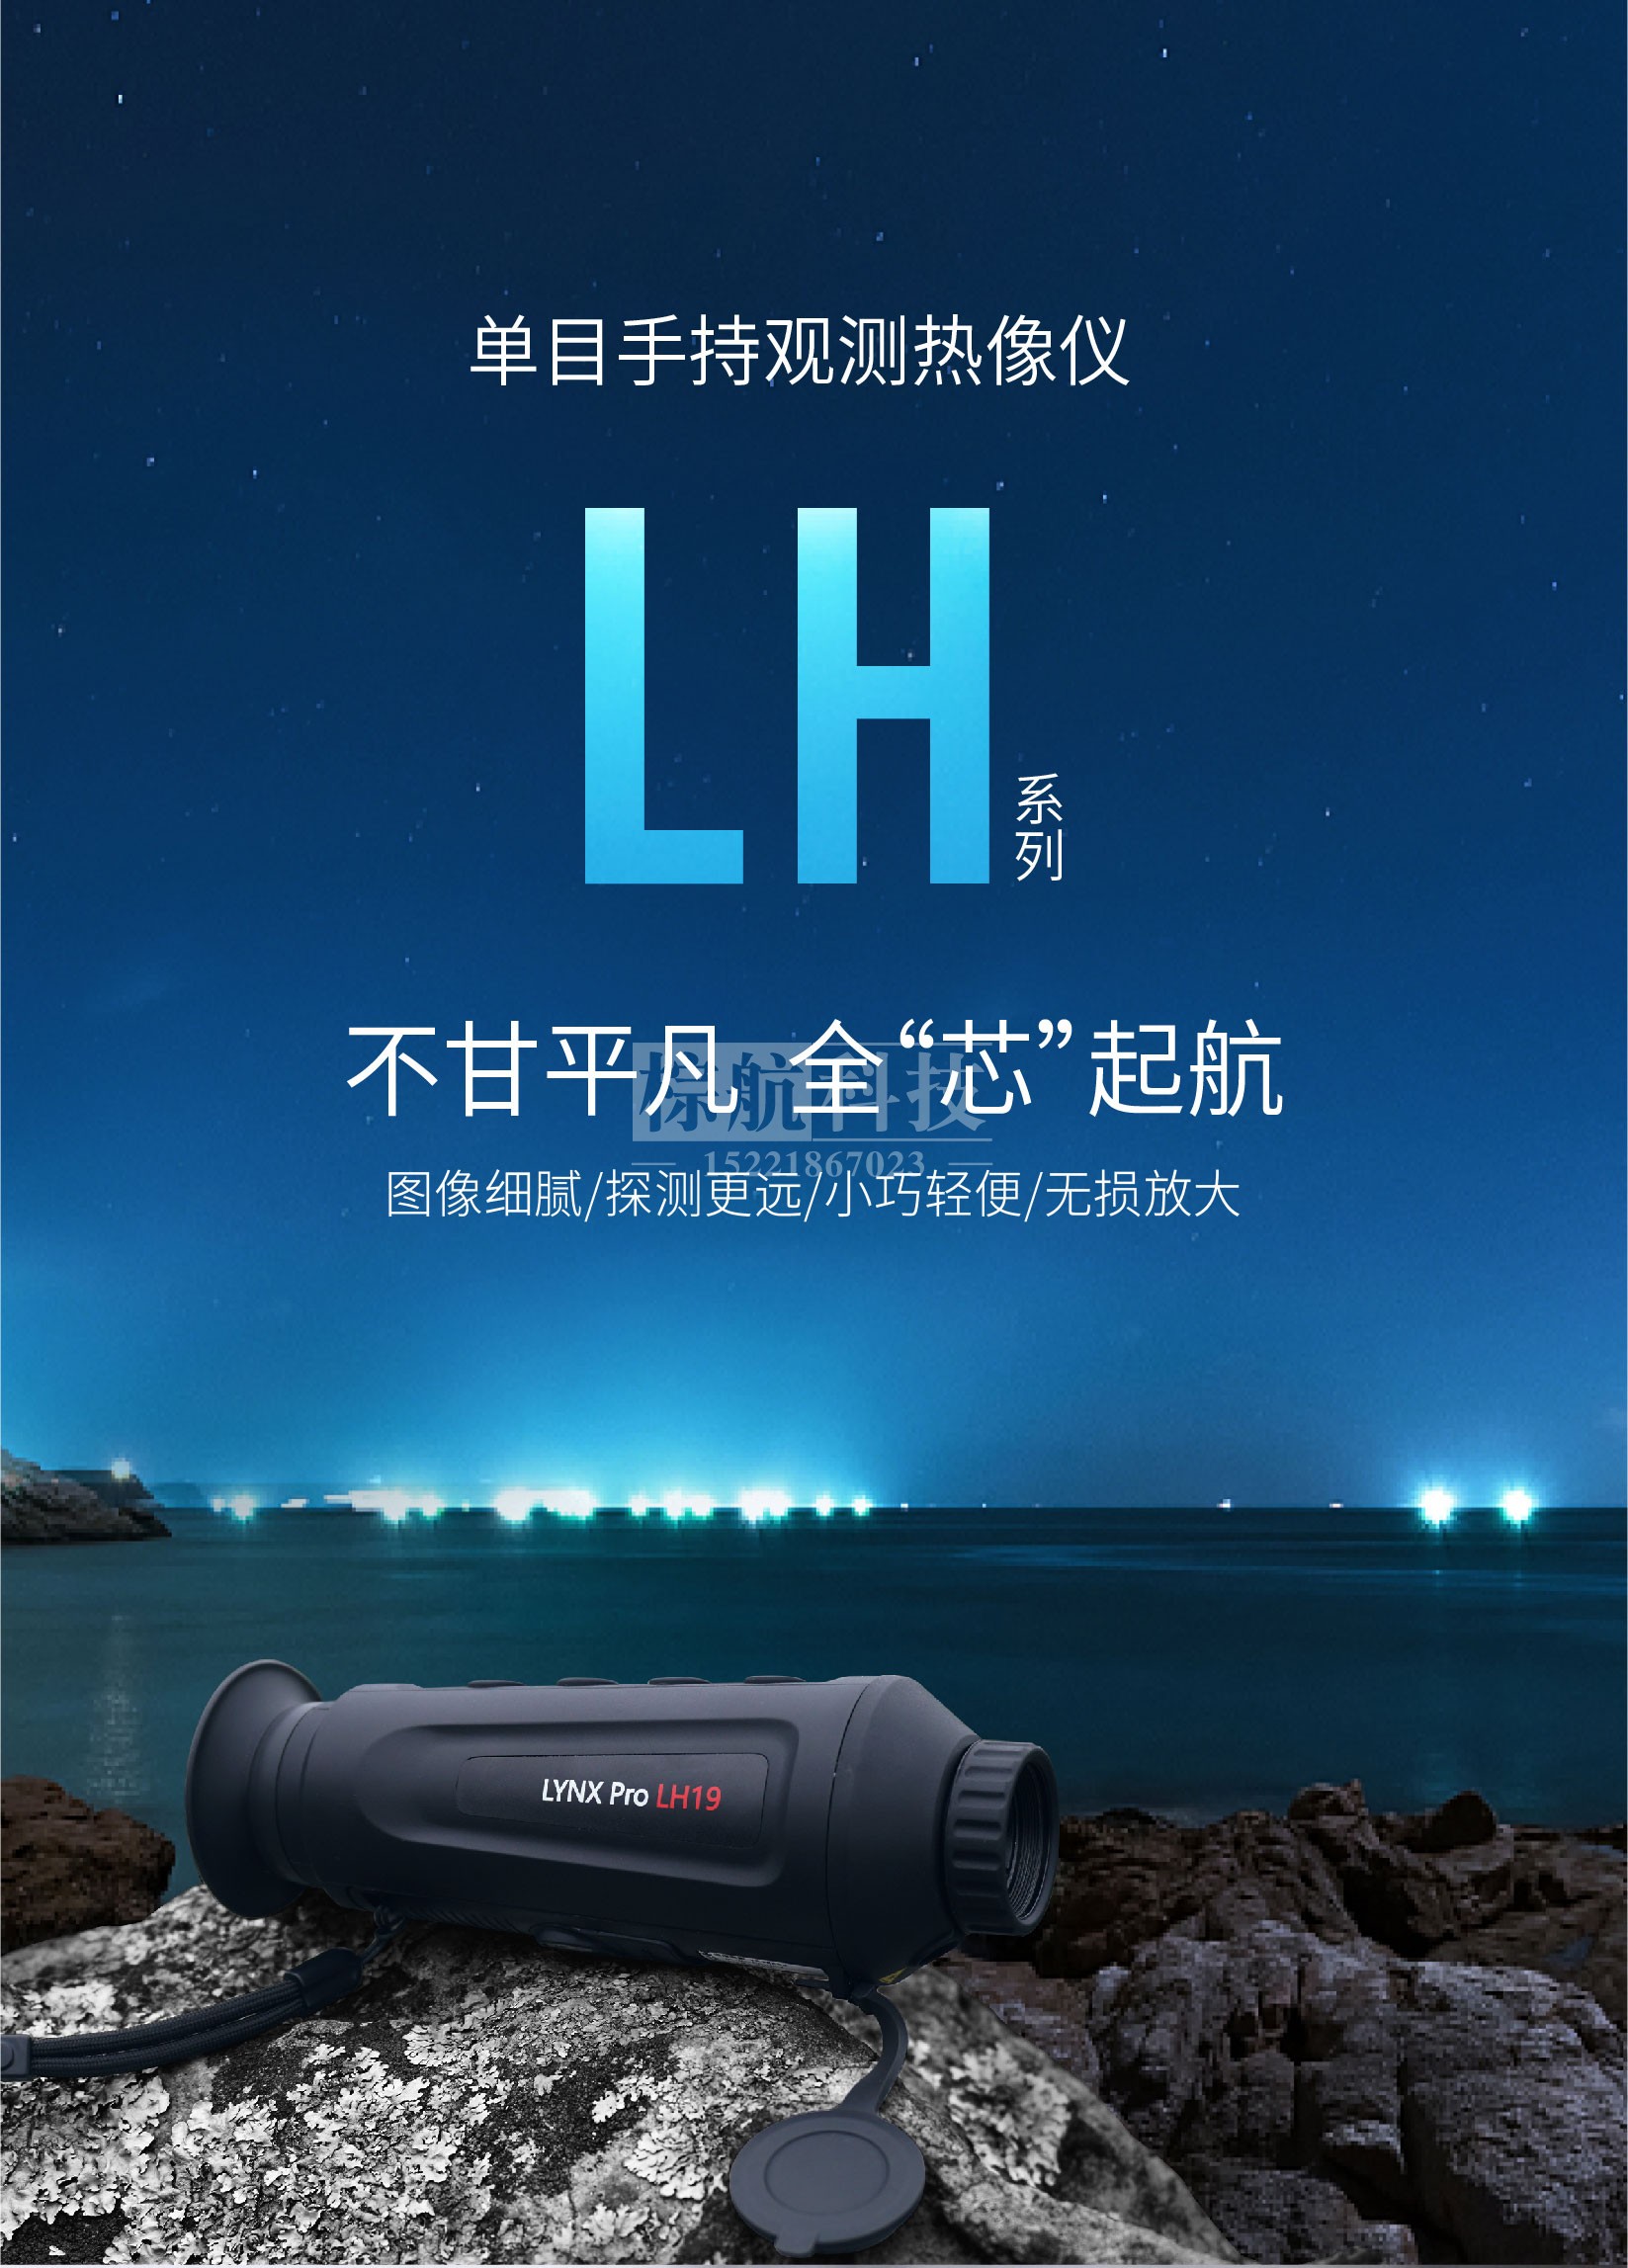 海康LH19手持热像仪 产品图.jpg